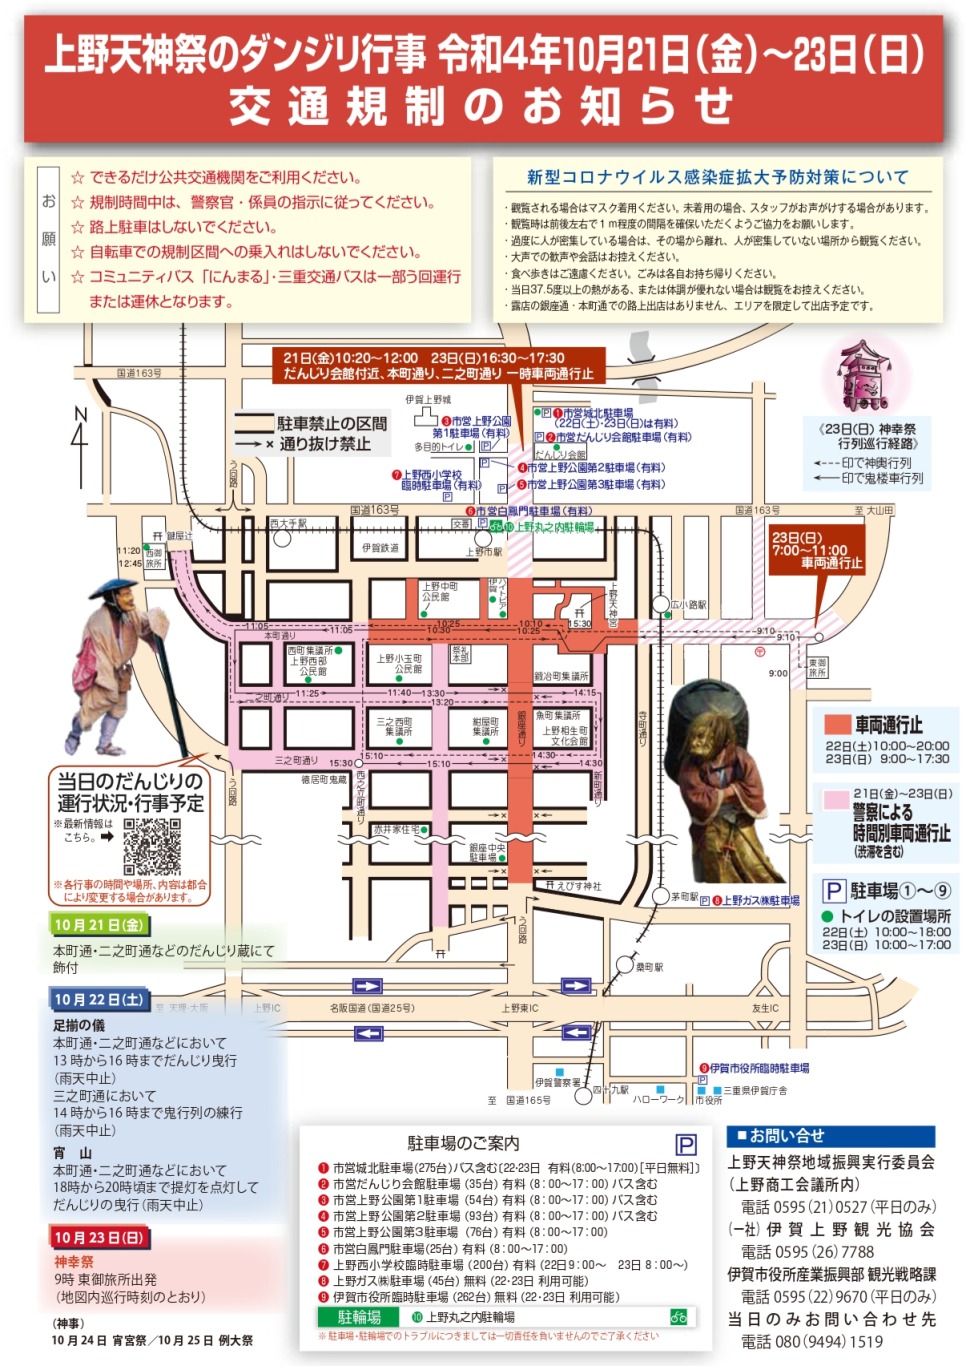 上野天神祭2022年の交通規制図1